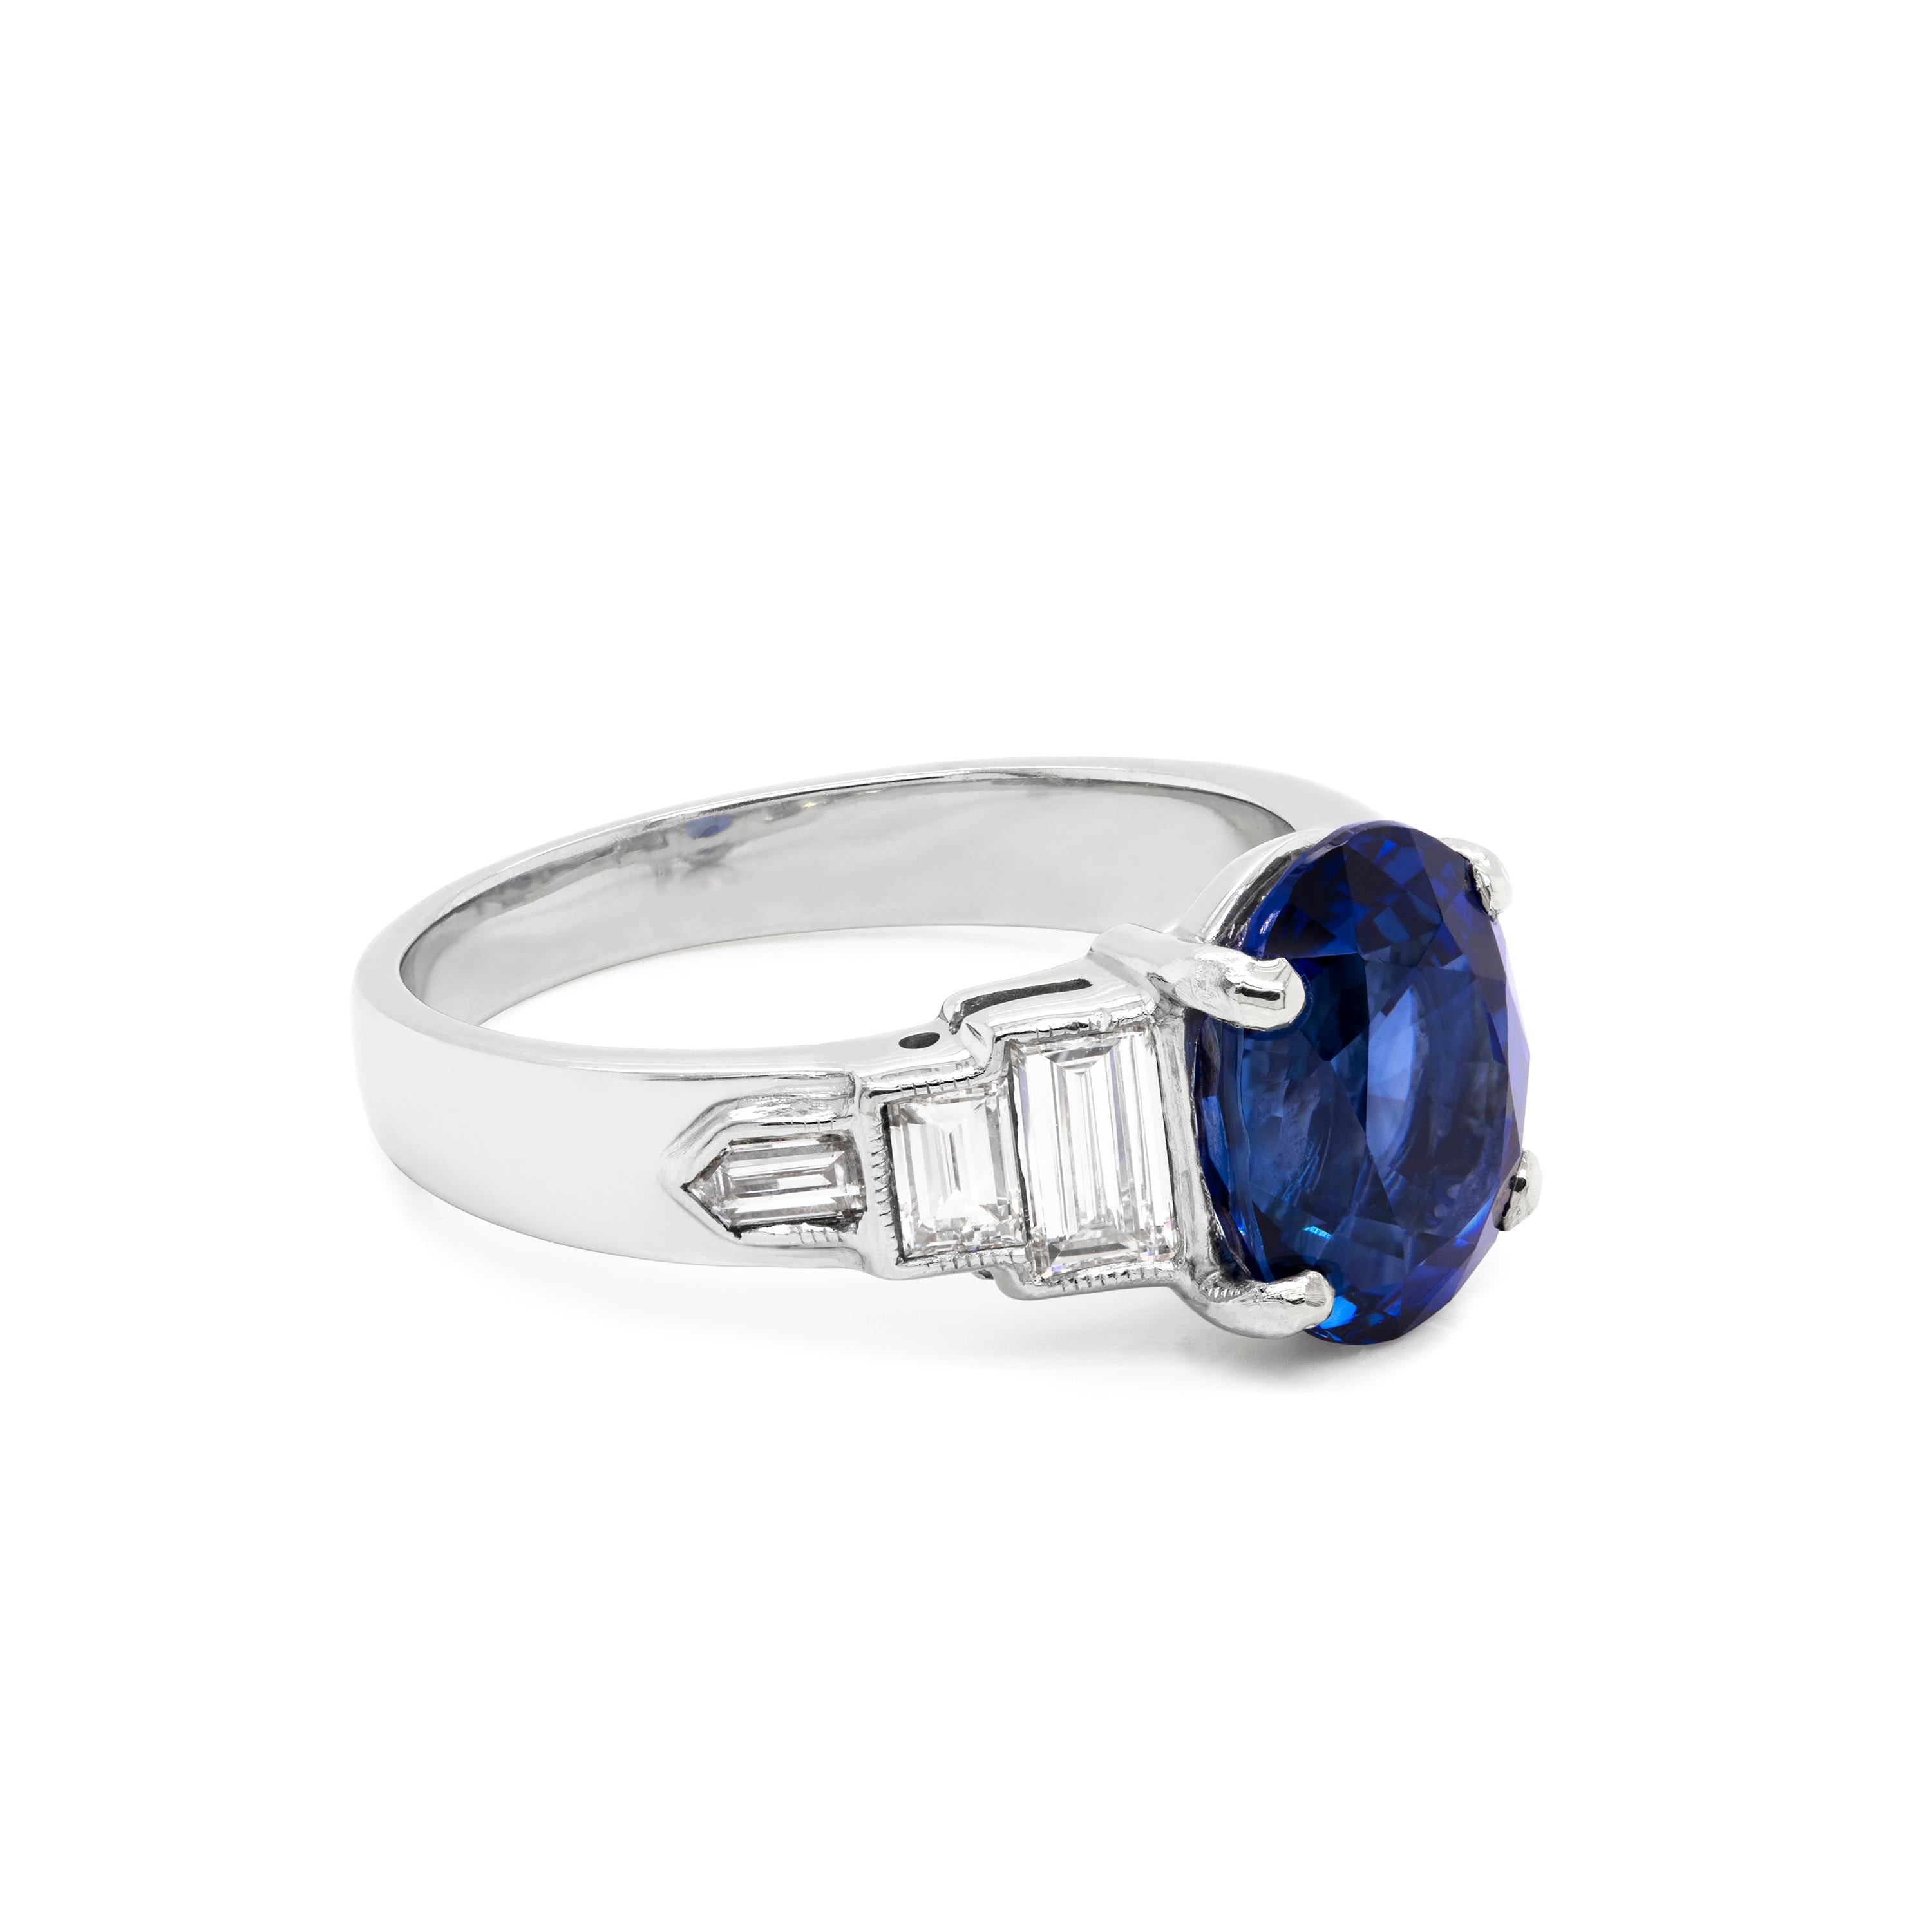 Cette magnifique bague de fiançailles des années 1950 de style Art déco est ornée d'un saphir ovale bleu royal naturel pesant 3,18 carats dans une monture ouverte à quatre griffes. Le saphir est accompagné de deux diamants de taille baguette et d'un